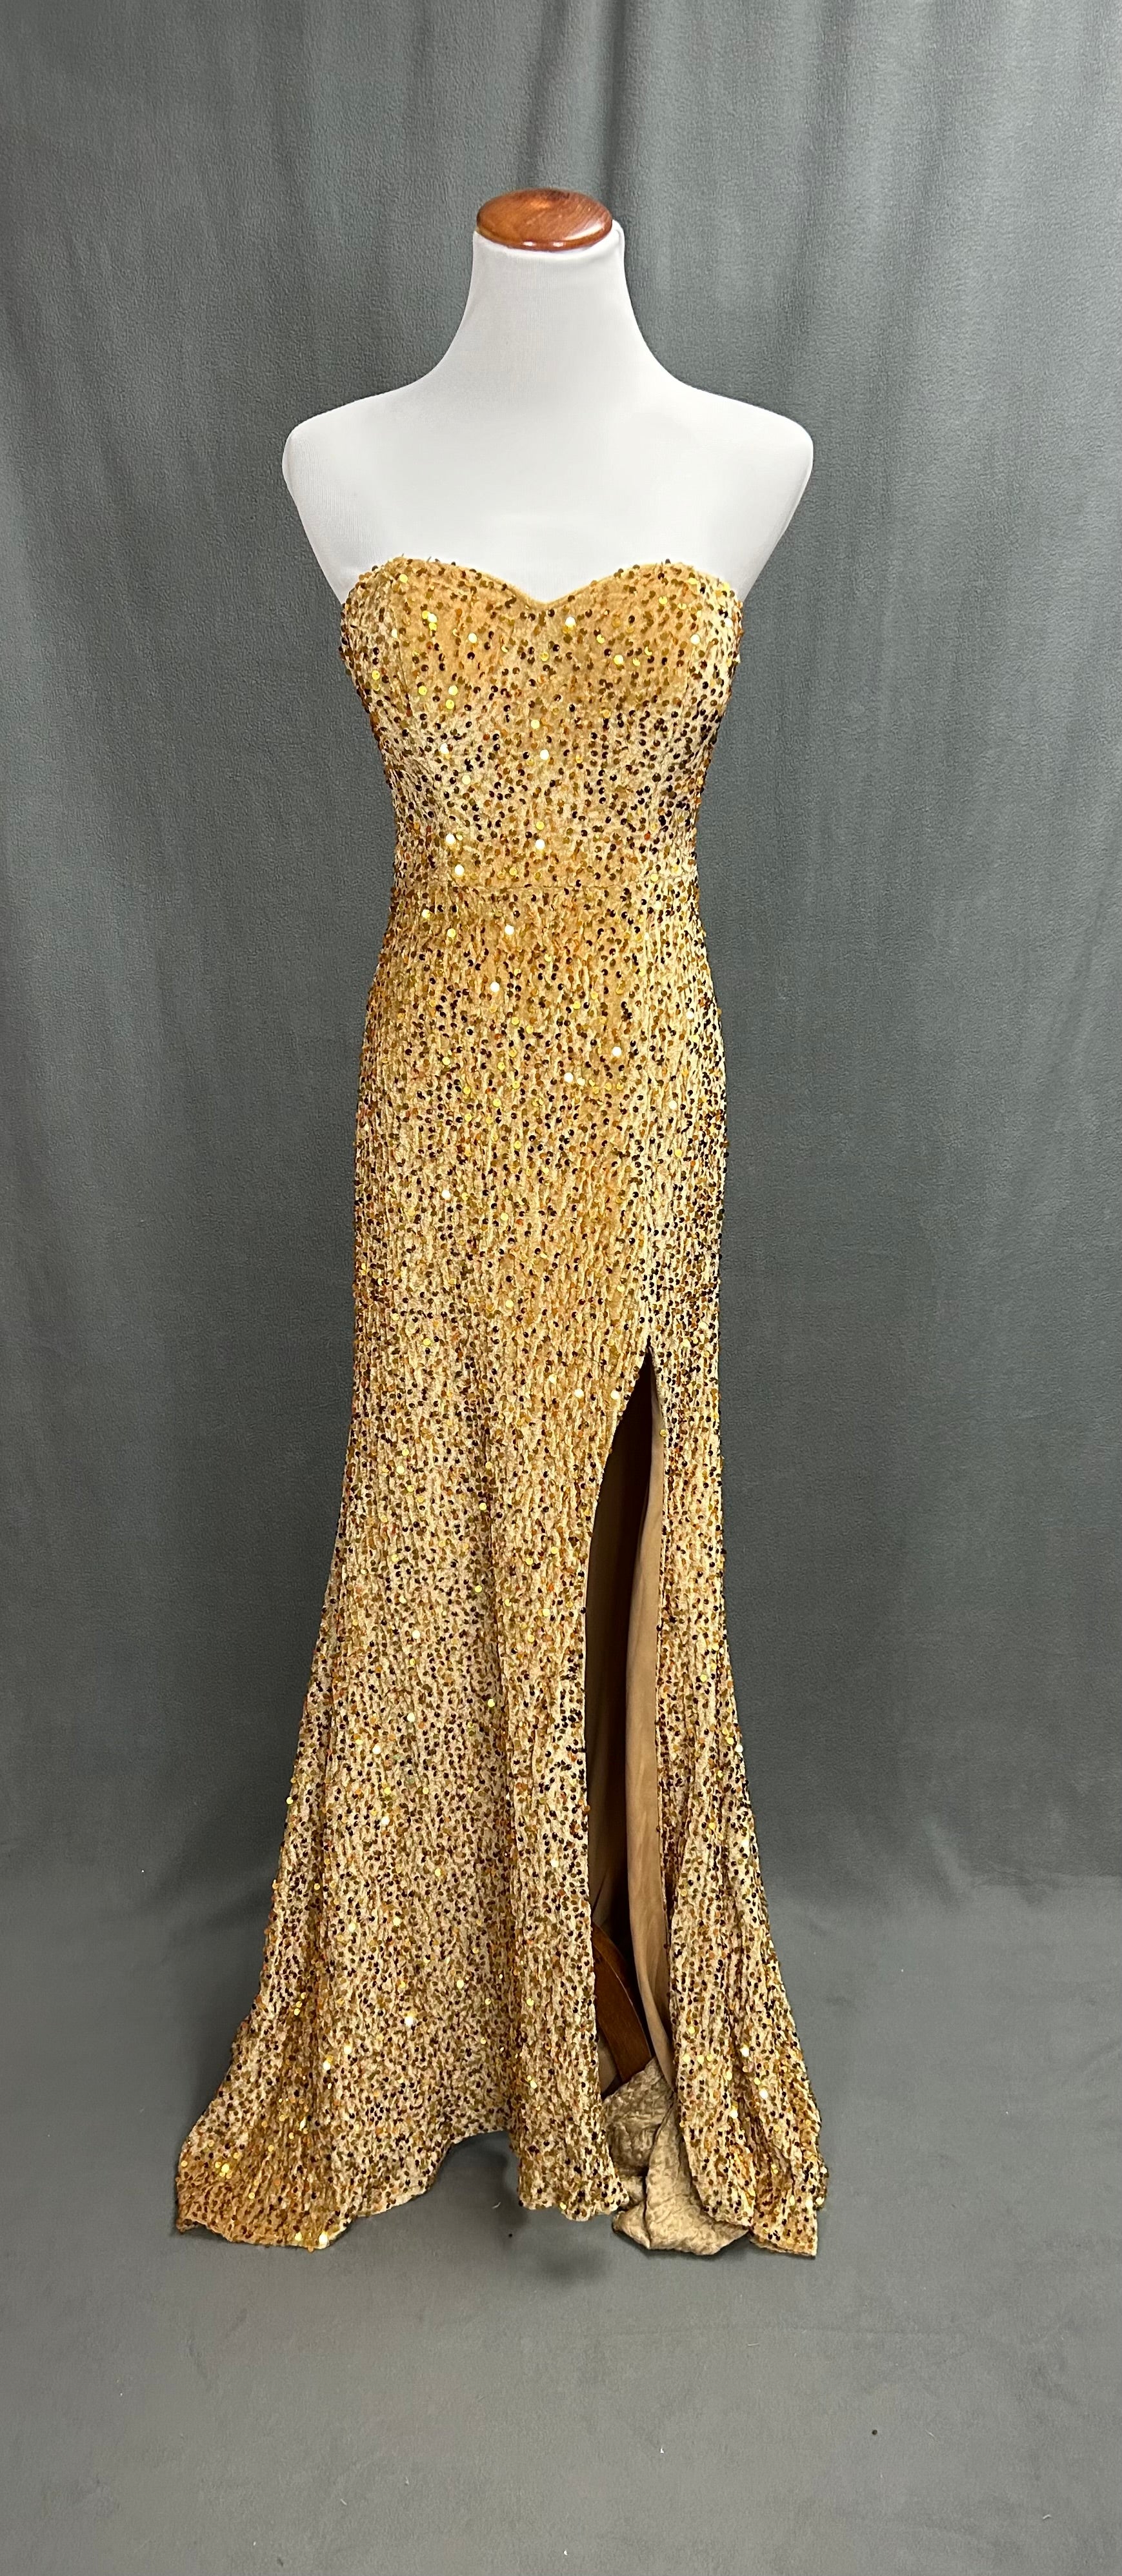 Yulure gold dress, size 4